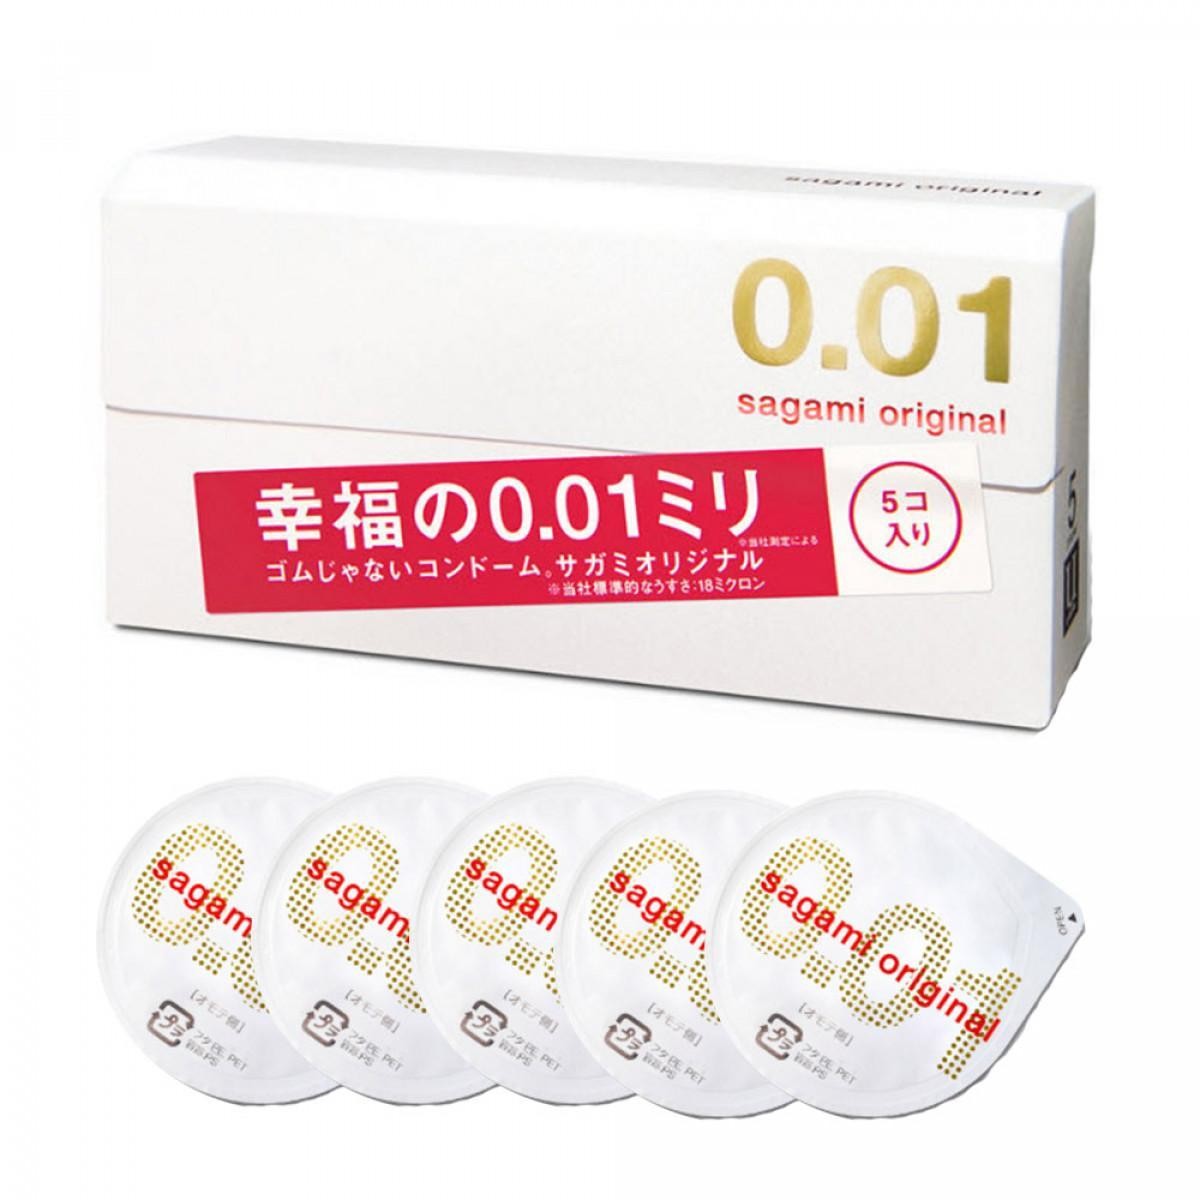 sagami-original-001-condom